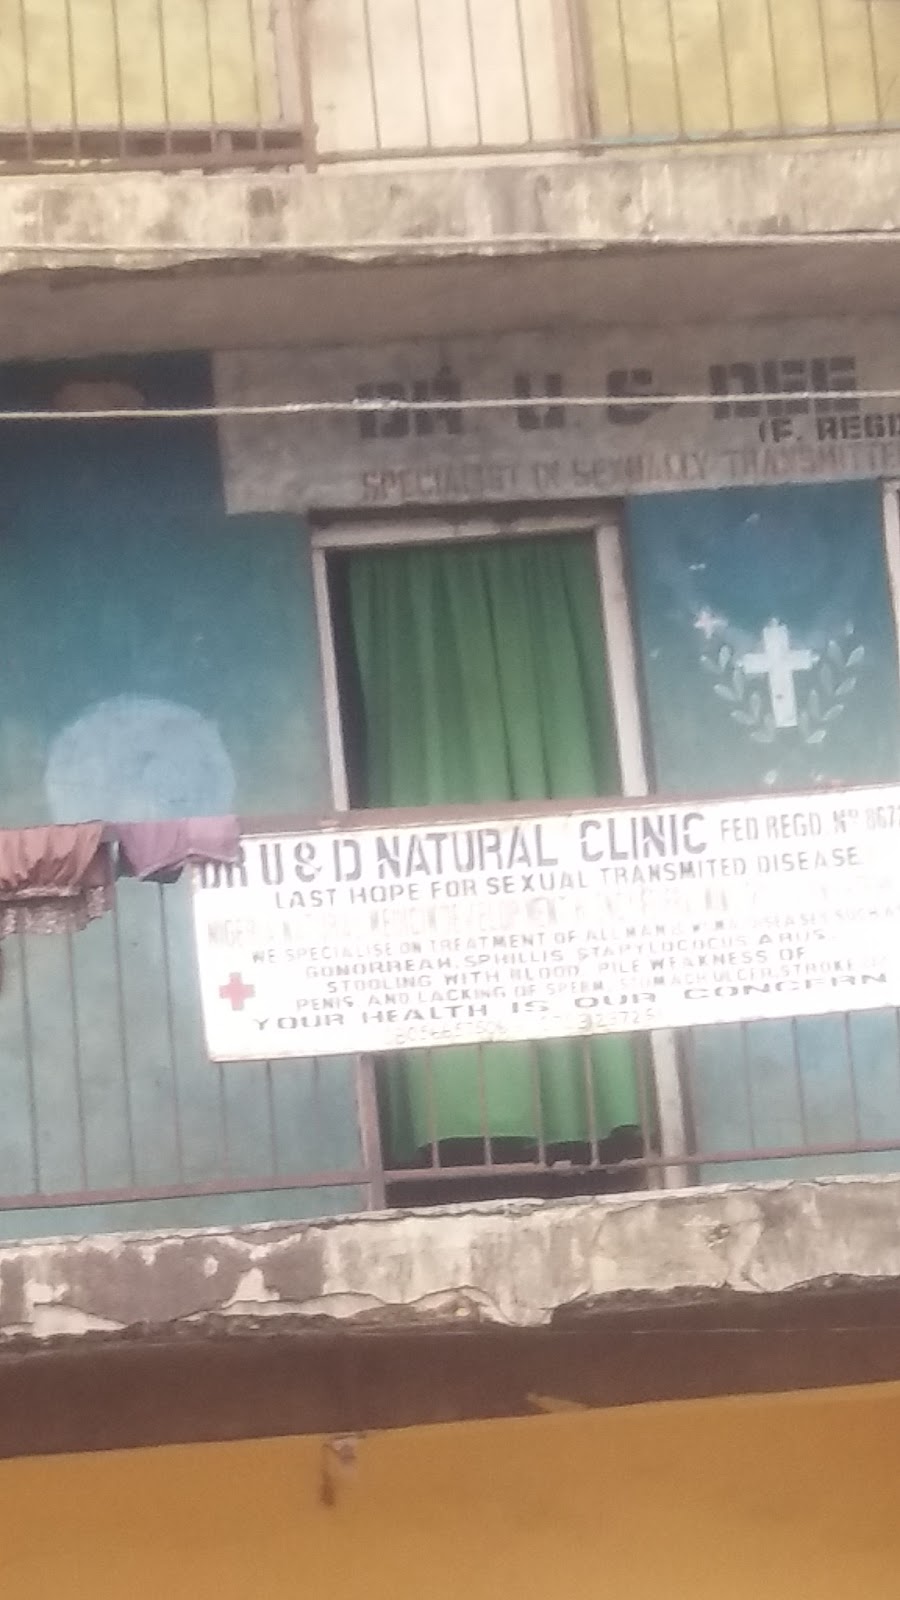 Dr. U & D Natural Clinic